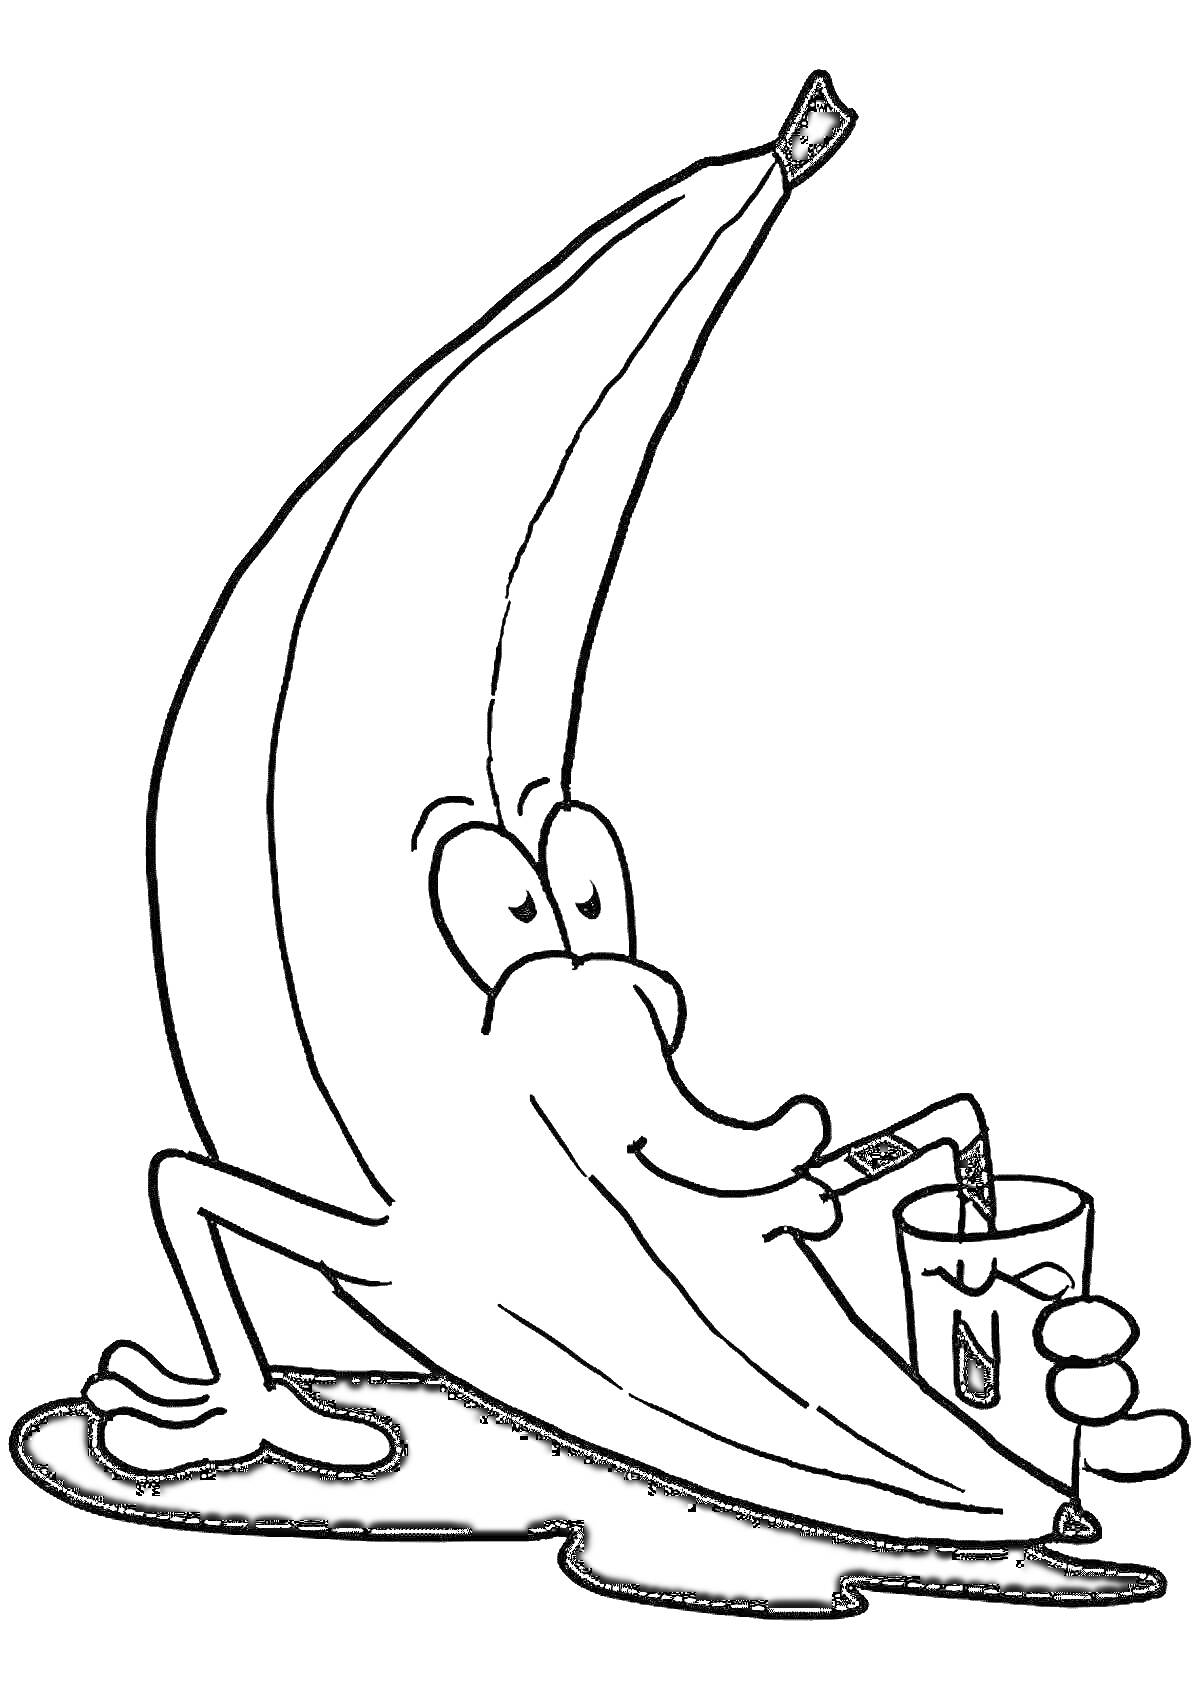 Банан, стоящий на ногах, пьет сок через трубочку